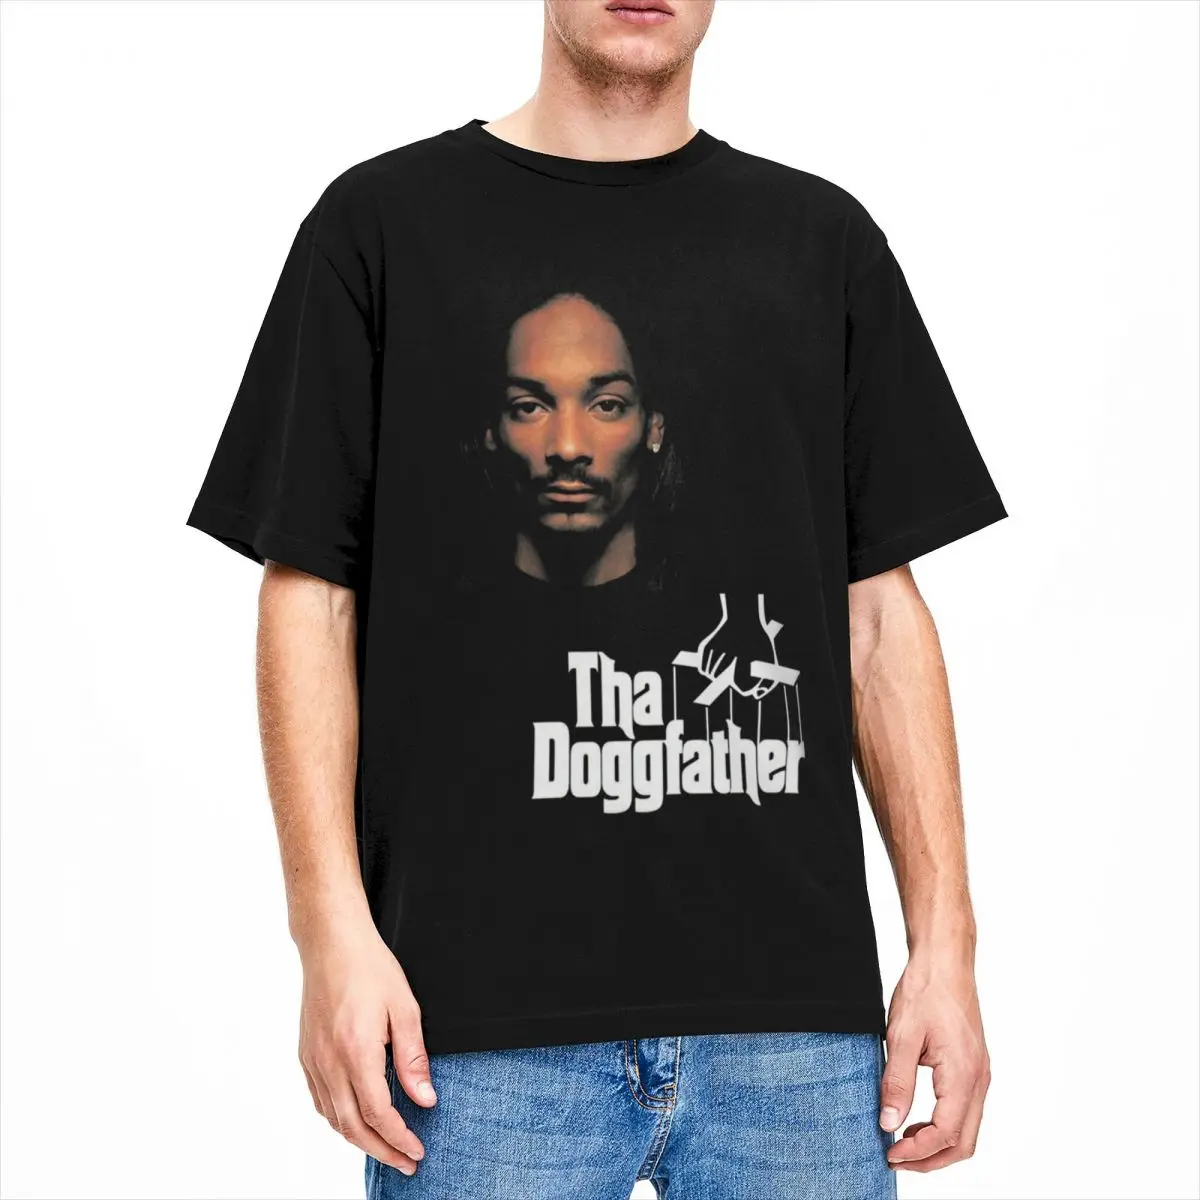 Snoop Dogg Tha Doggfather for Men Women T Shirt Hip Hop Stuff Novelty Tee Shirt Short Sleeve Round Neck